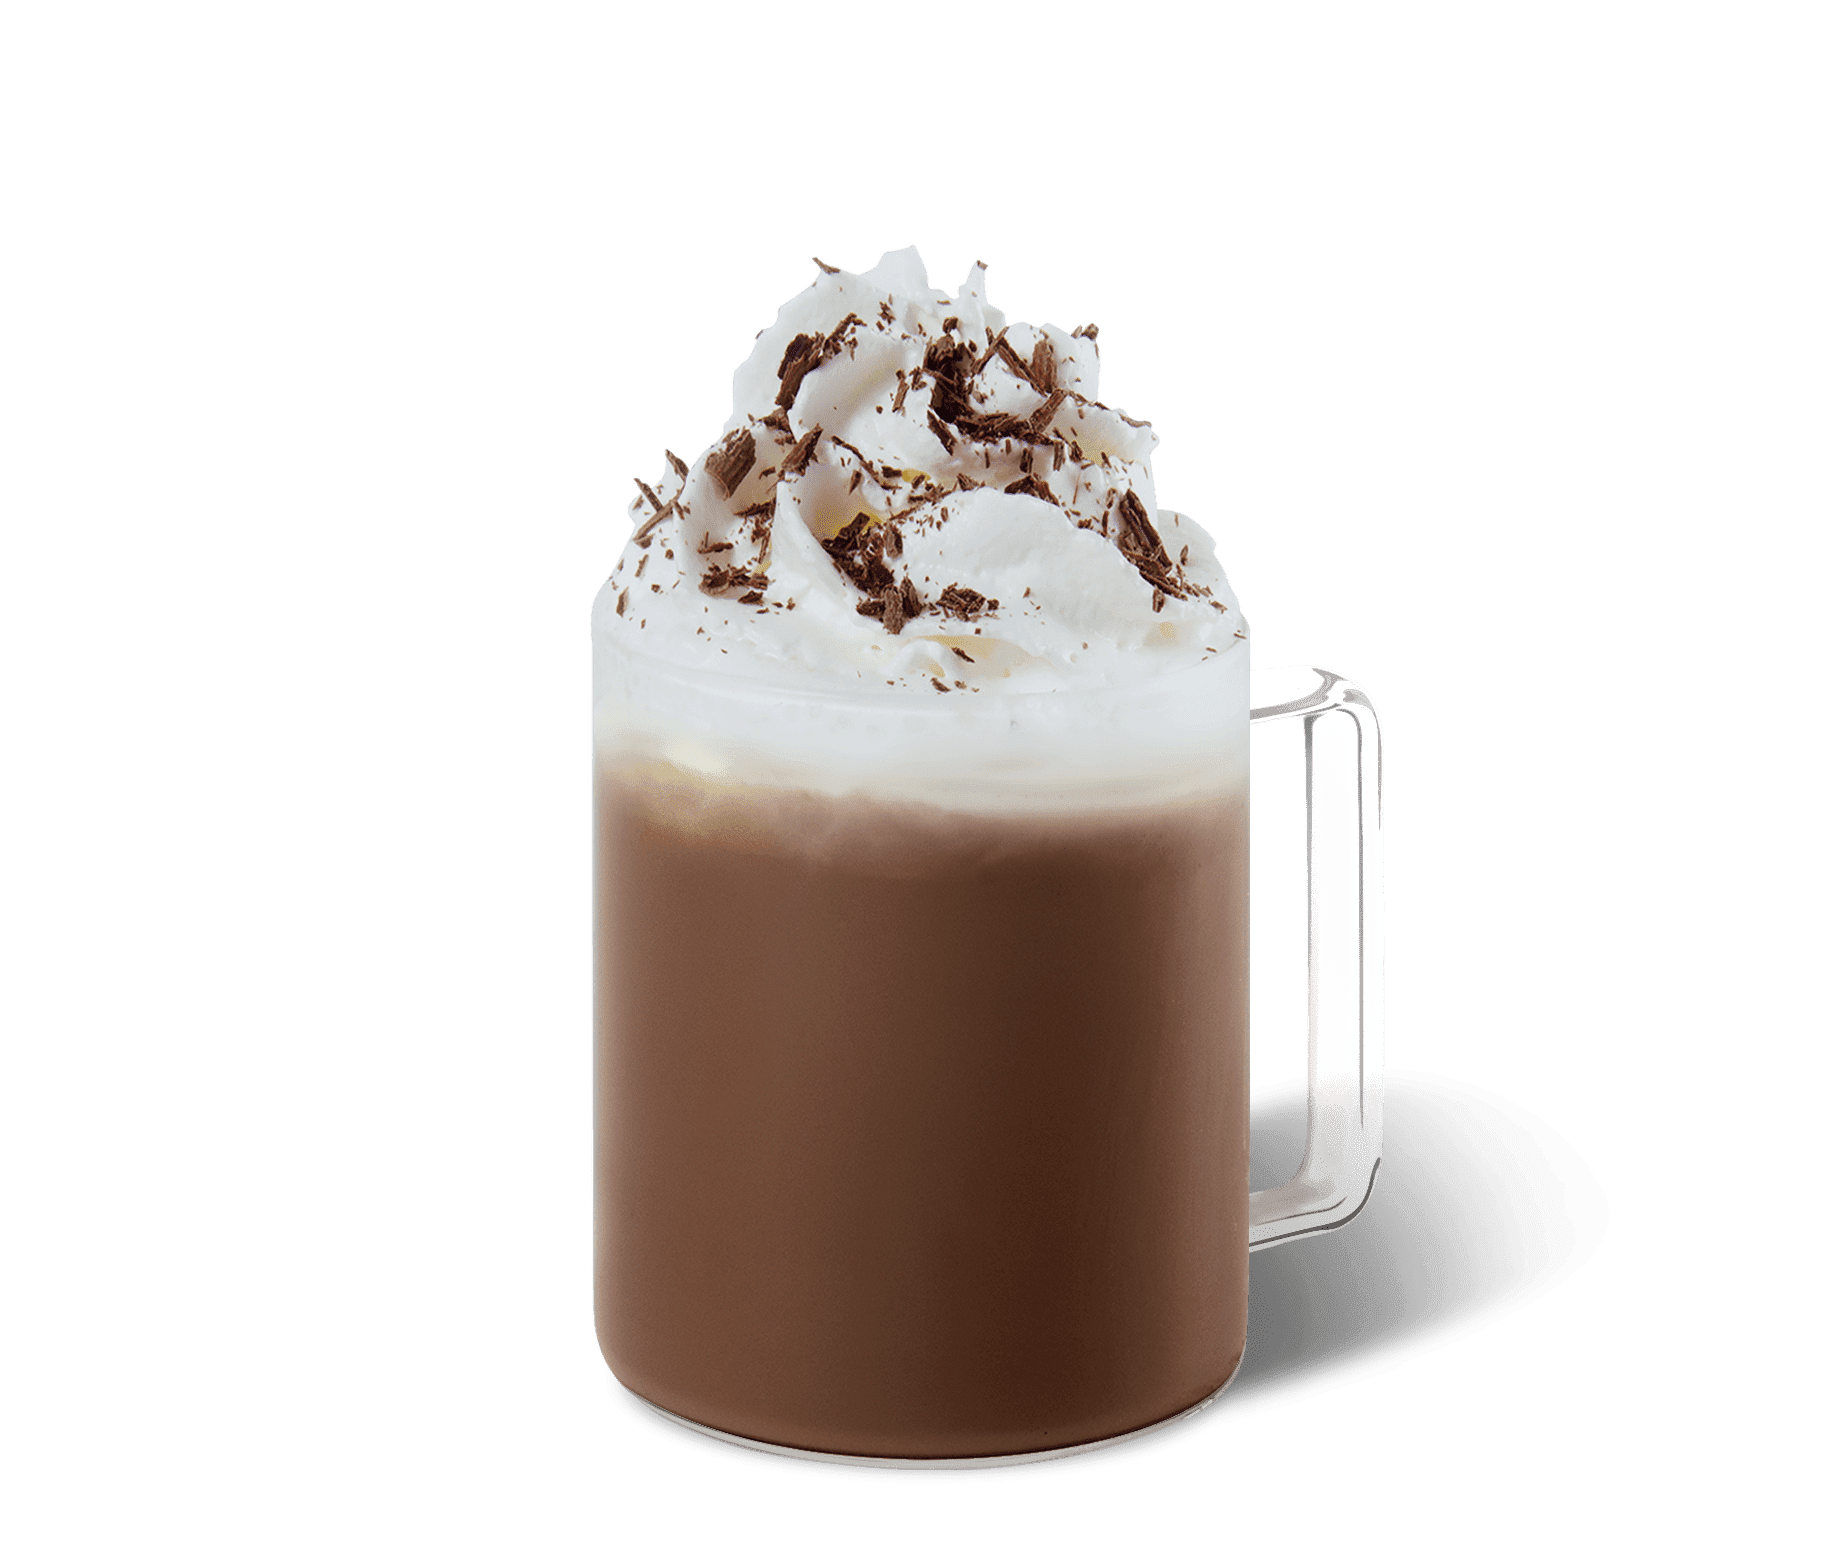 Café Solúvel Cremoso, Starbucks®, Caffe Mocha, 1 Caixa